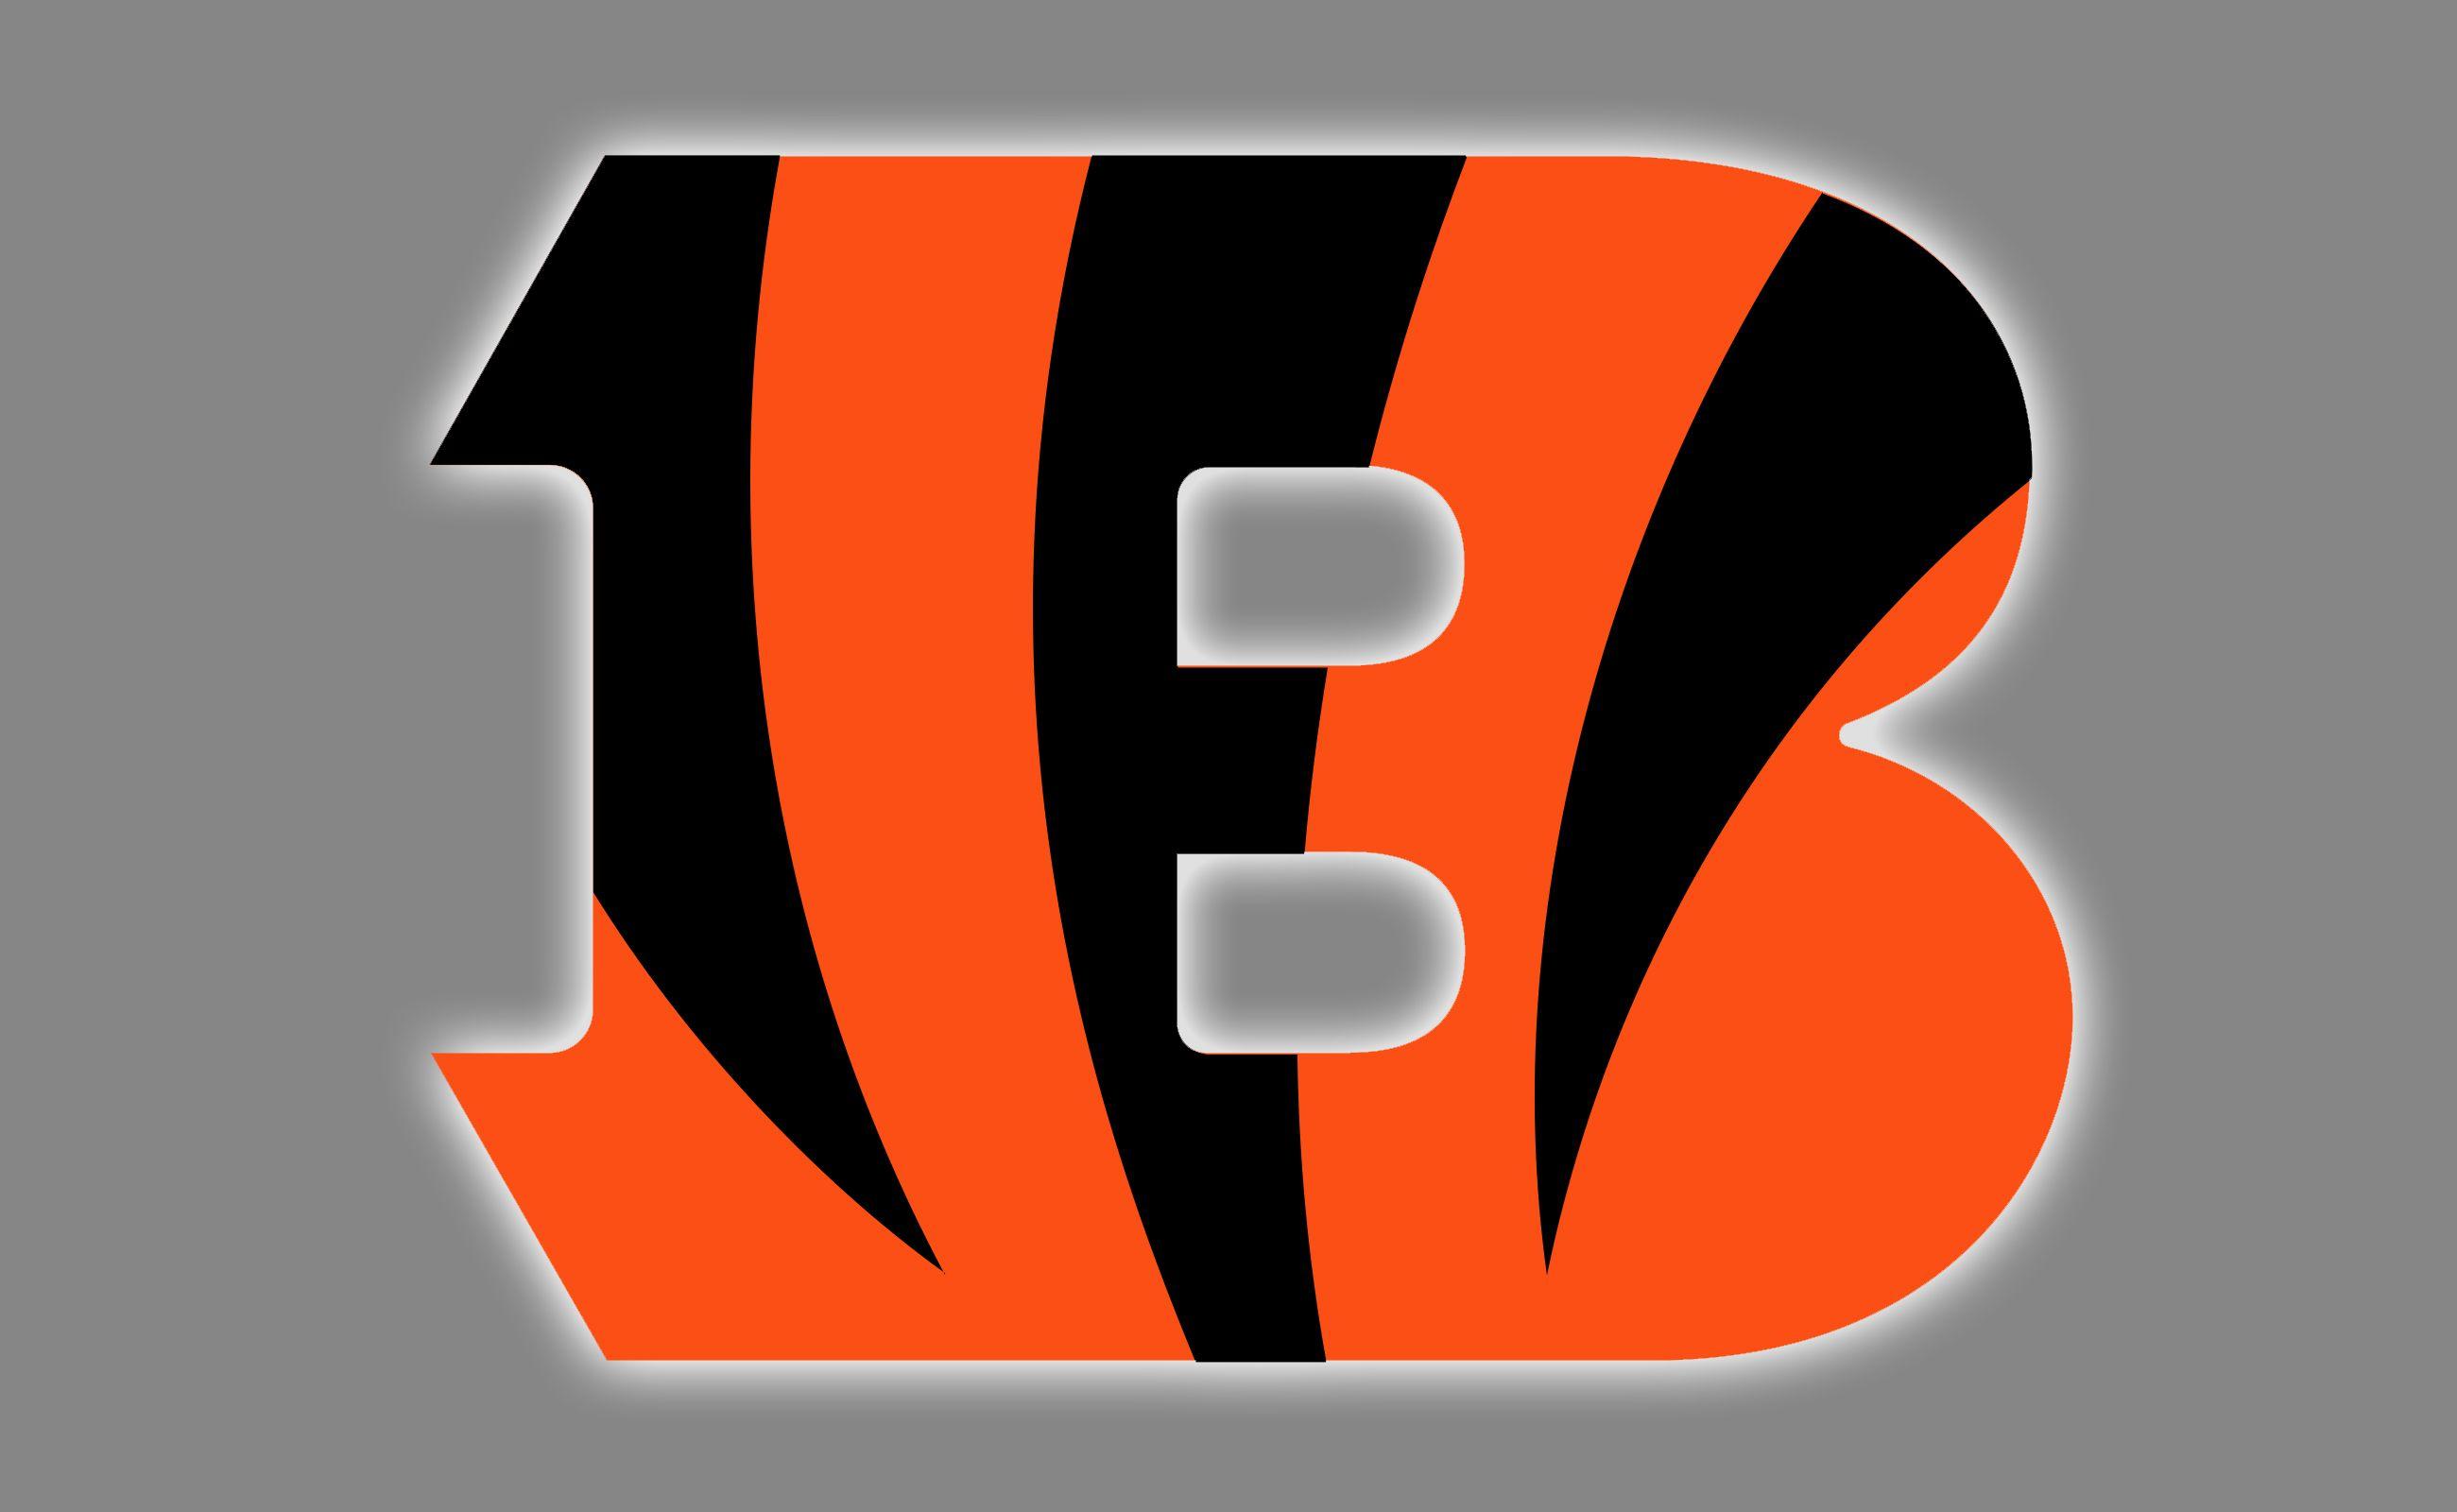 Bengals B Logo - Cincinnati Bengals Logo, Bengals Symbol, Meaning, History and Evolution